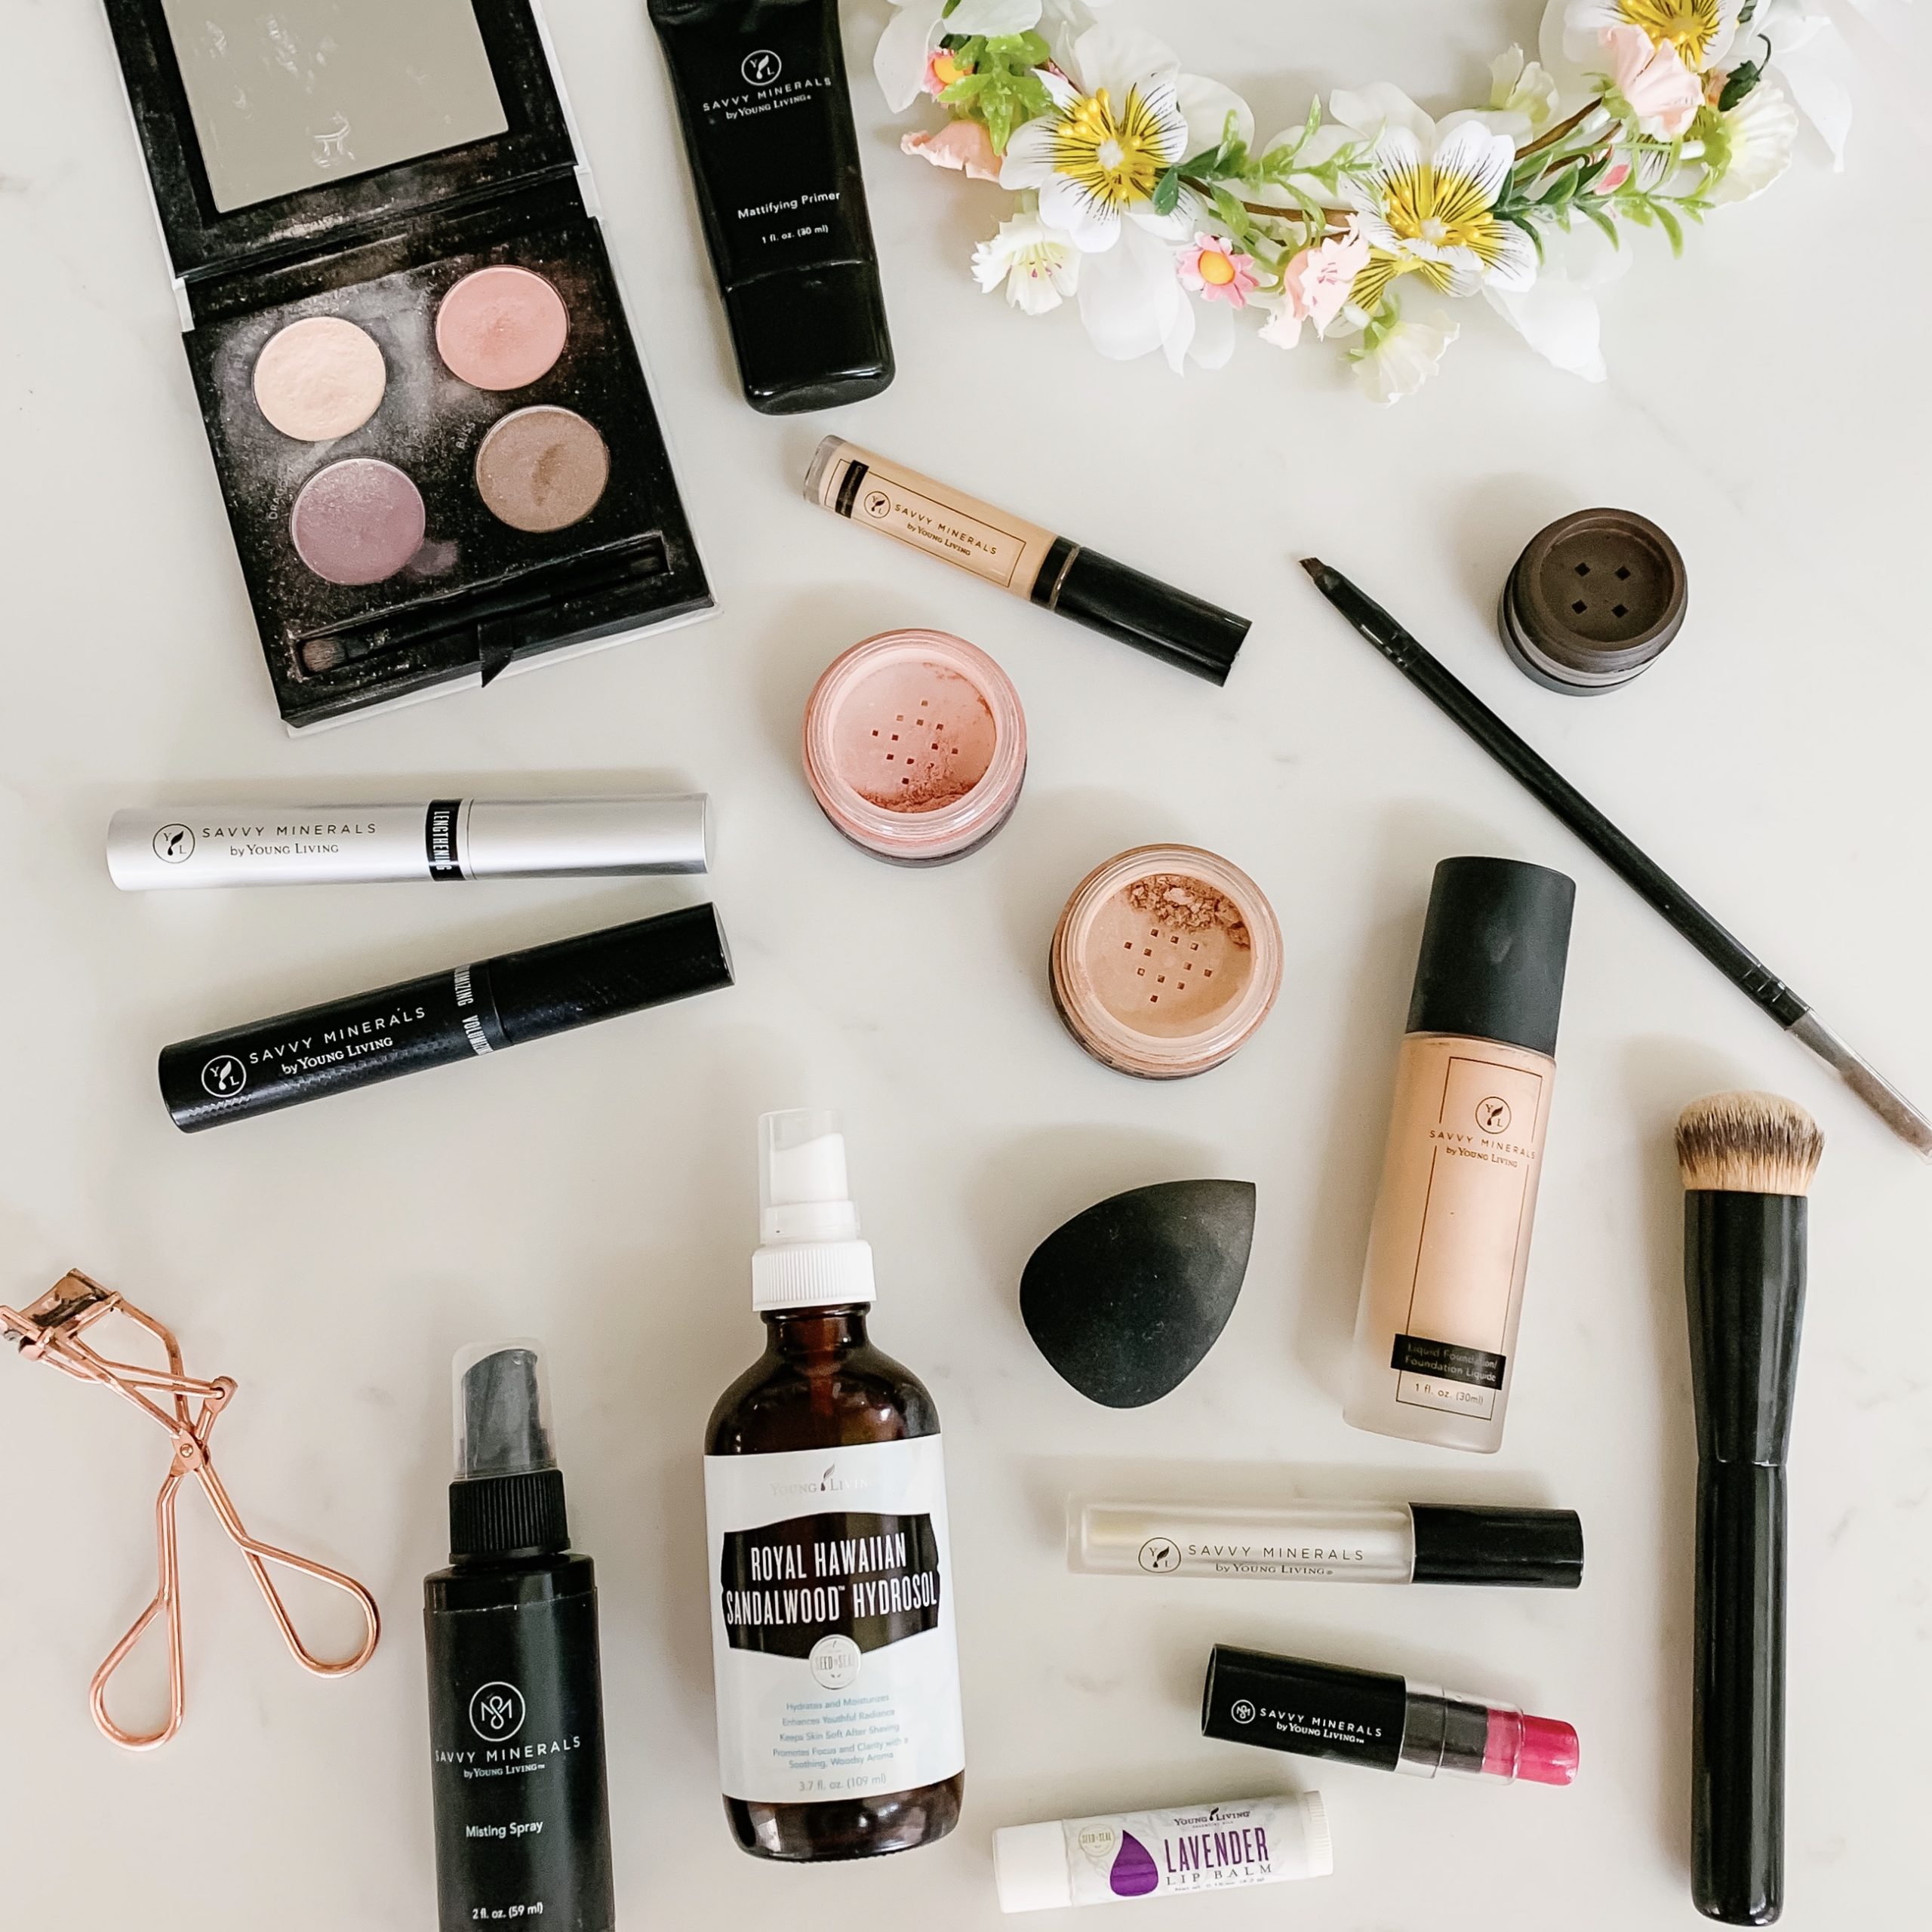 My Clean Makeup Routine: 10 Minute Makeup - Seven Graces